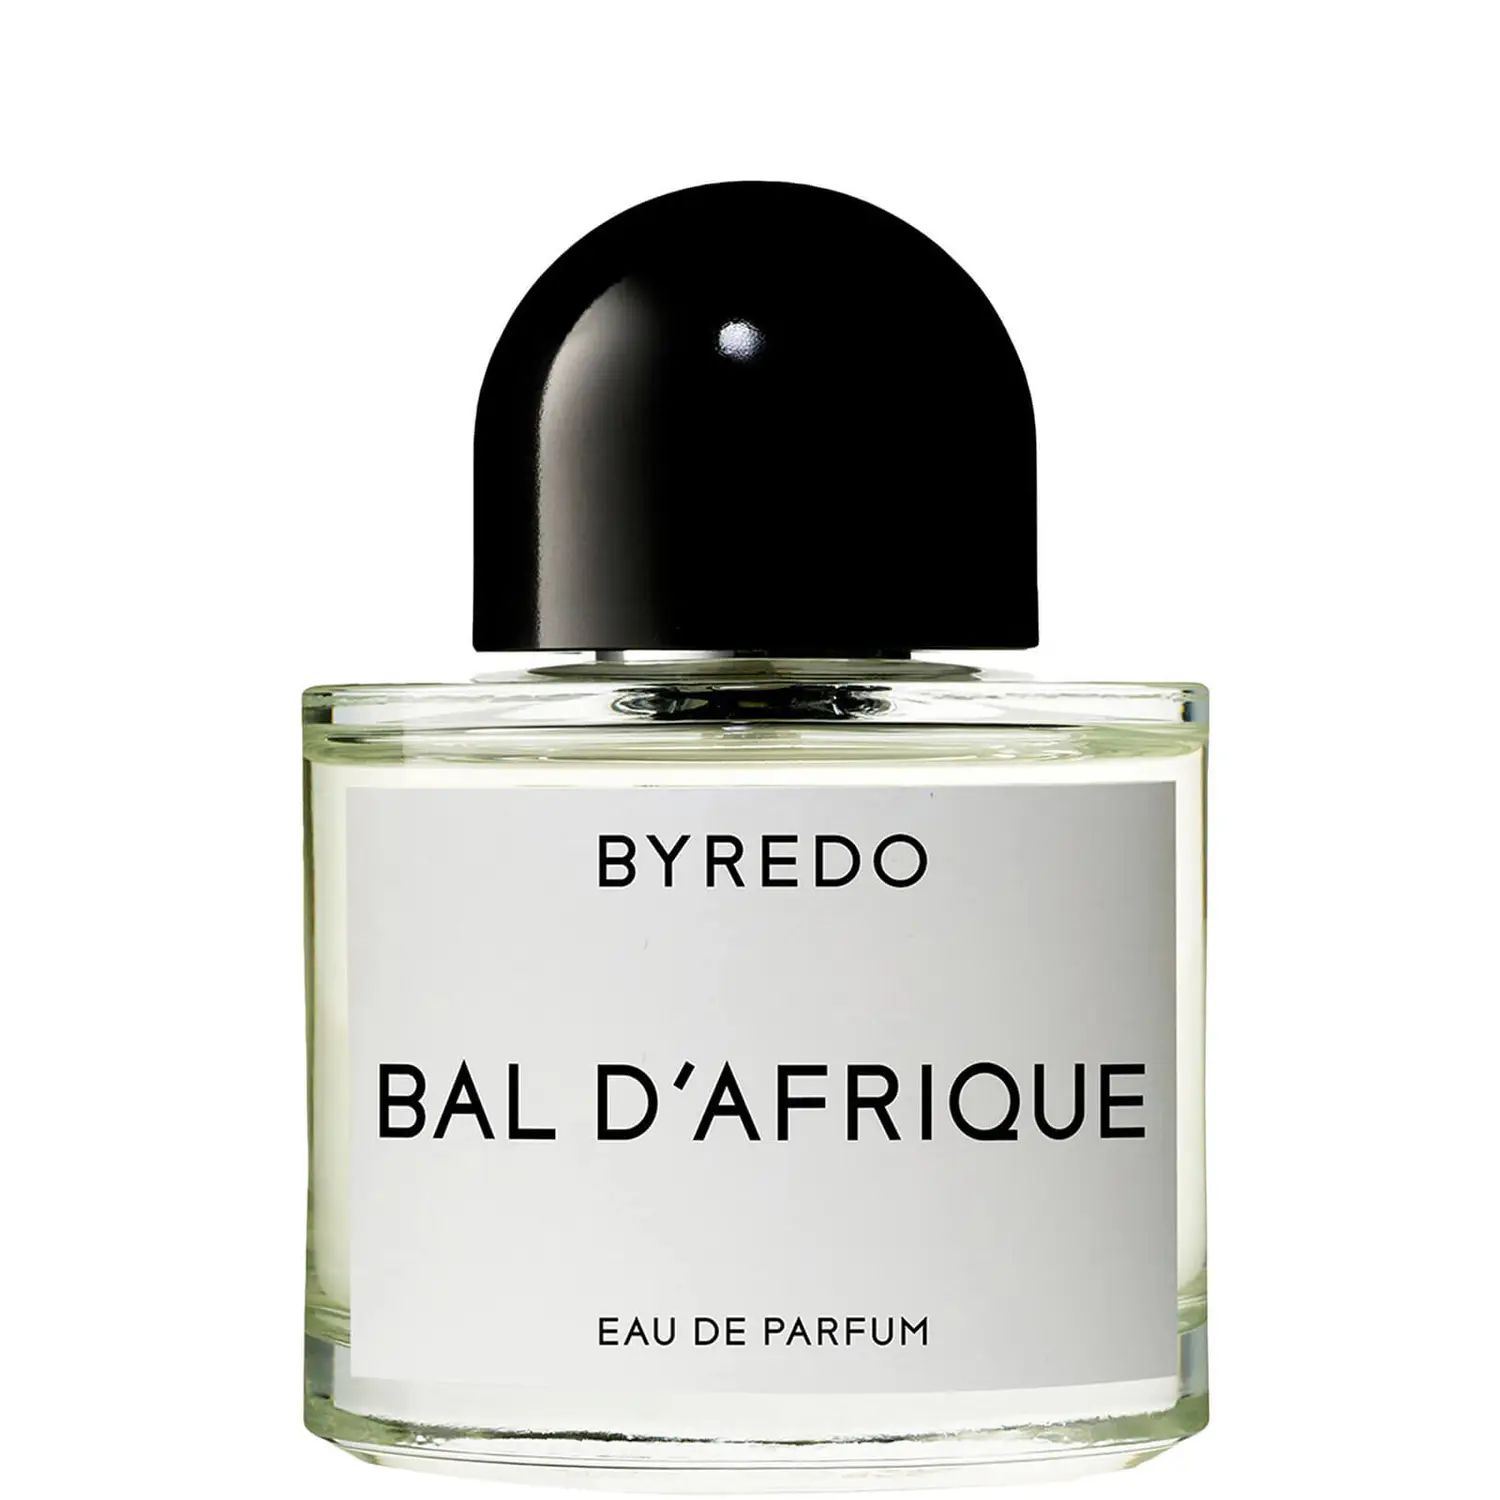 BYREDO Bal d'Afrique Eau de Parfum 50ml | Cult Beauty